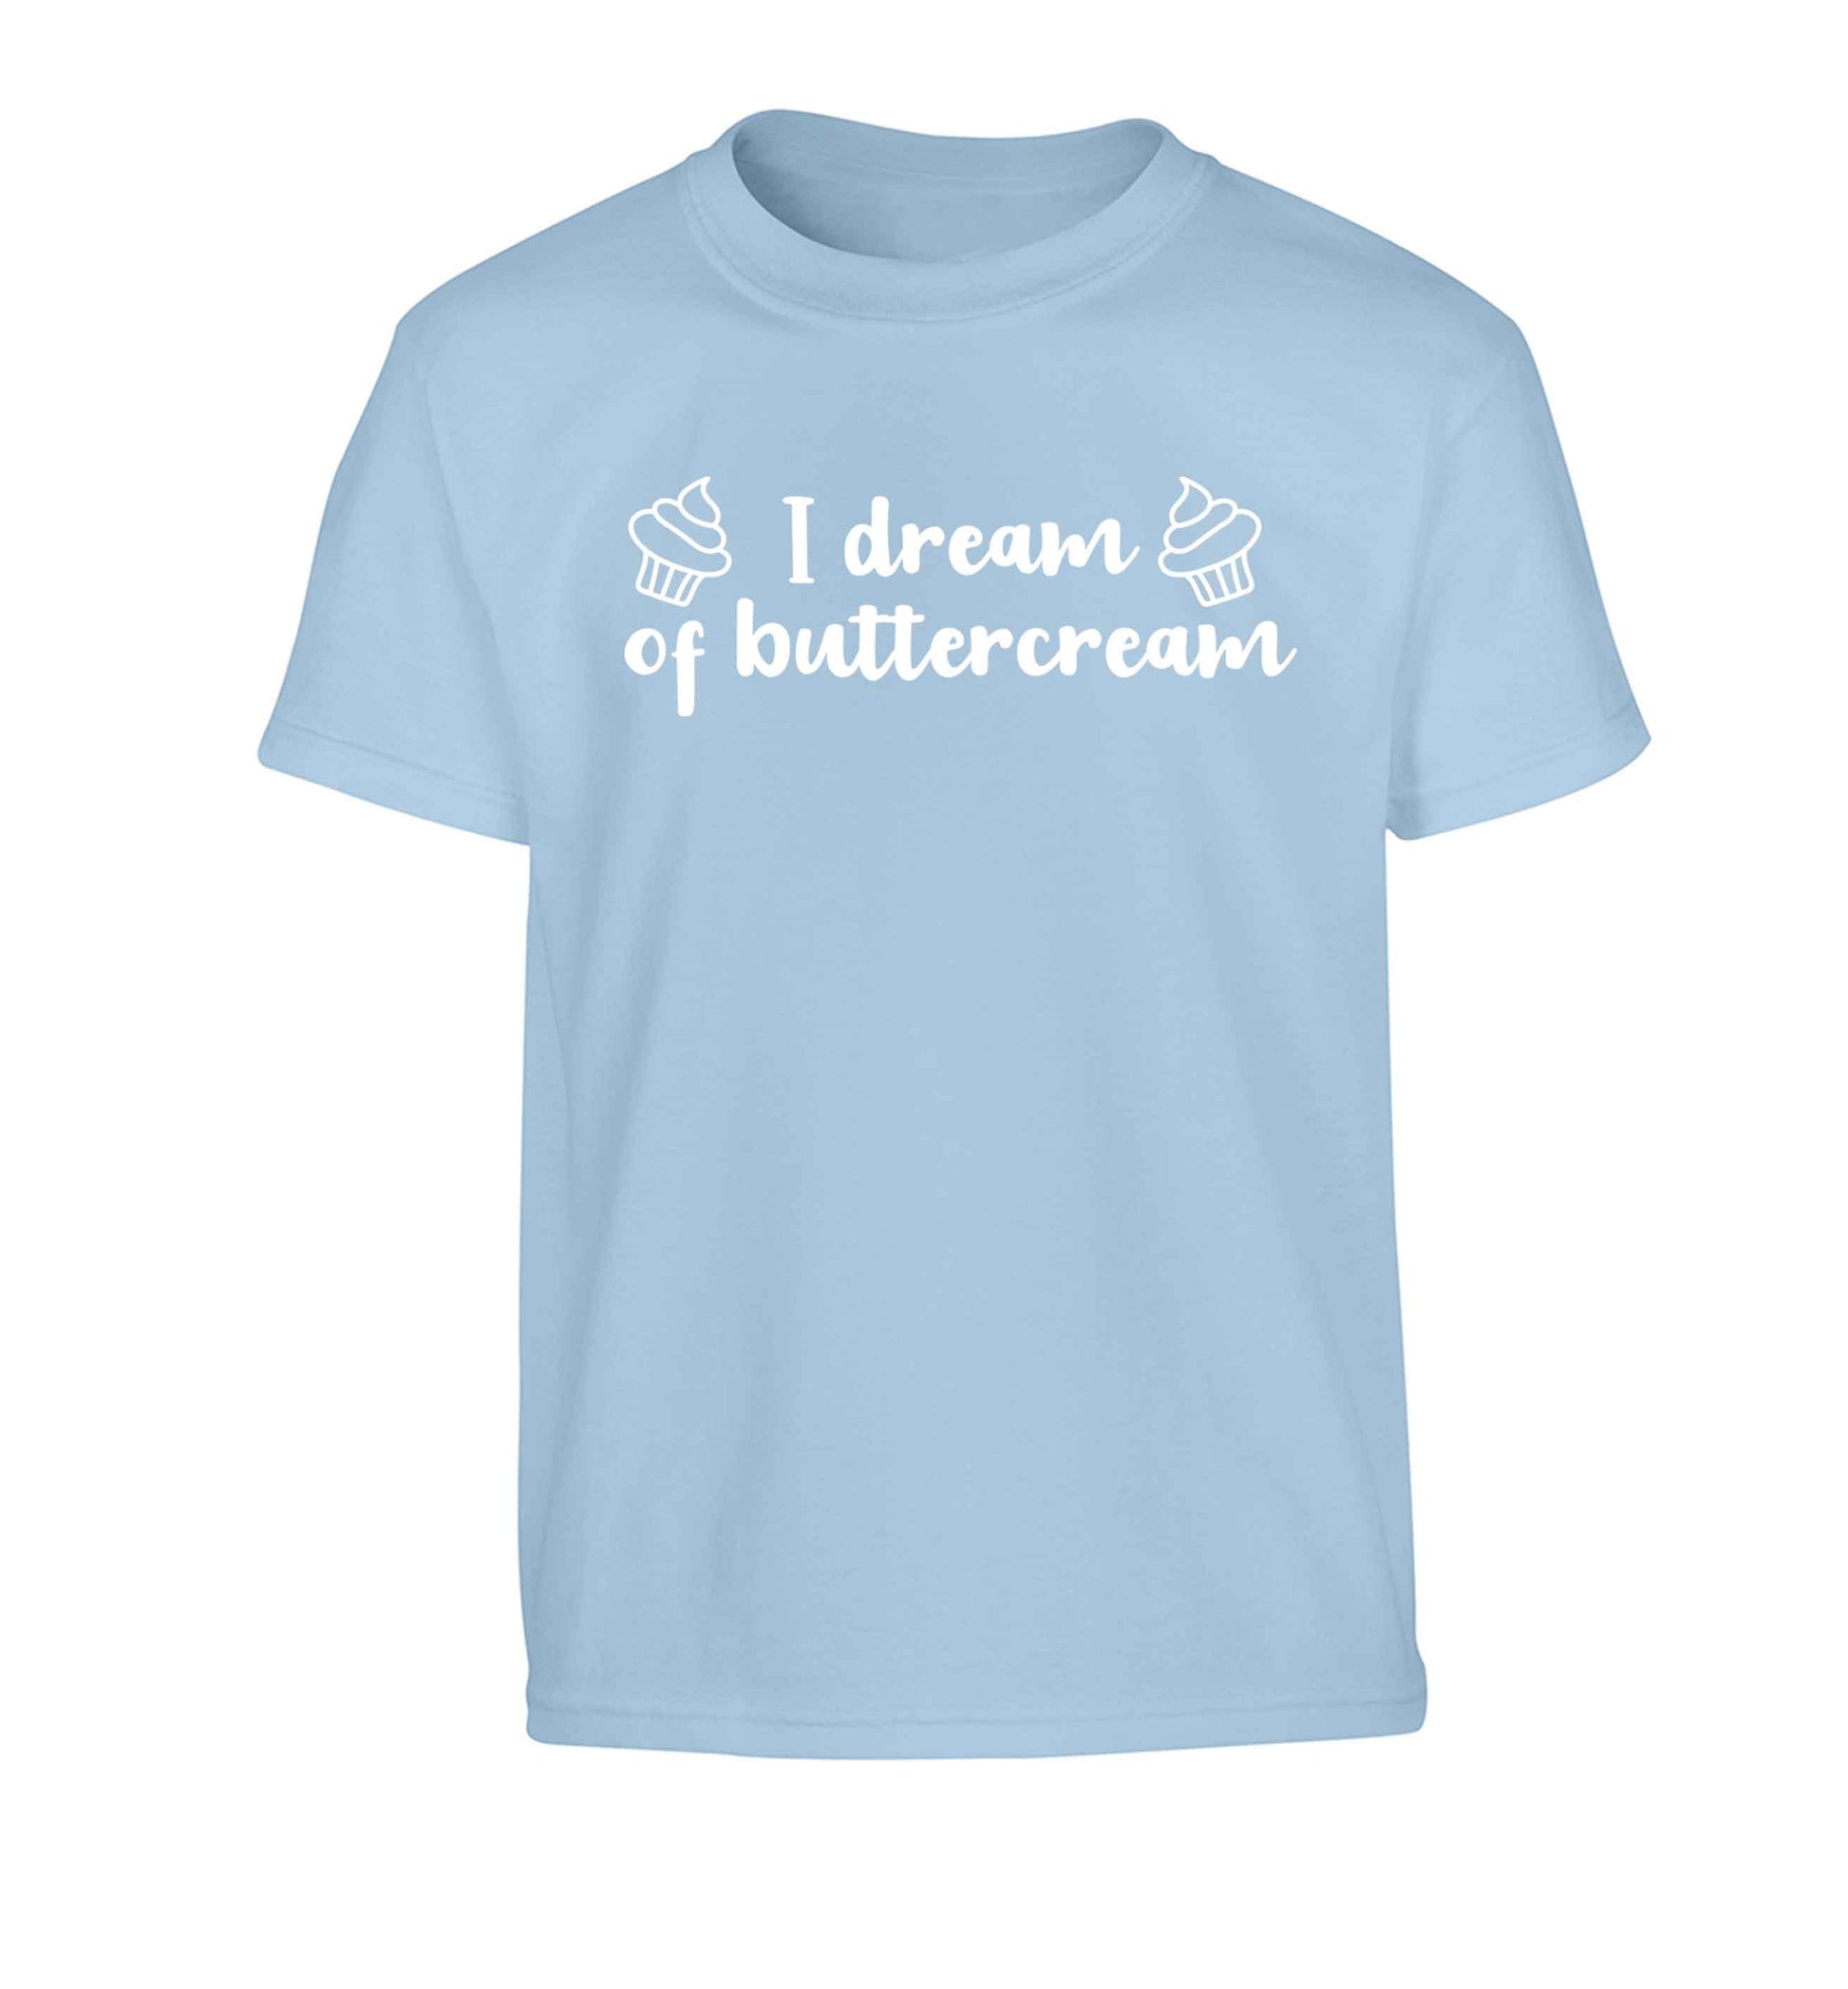 I dream of buttercream Children's light blue Tshirt 12-13 Years